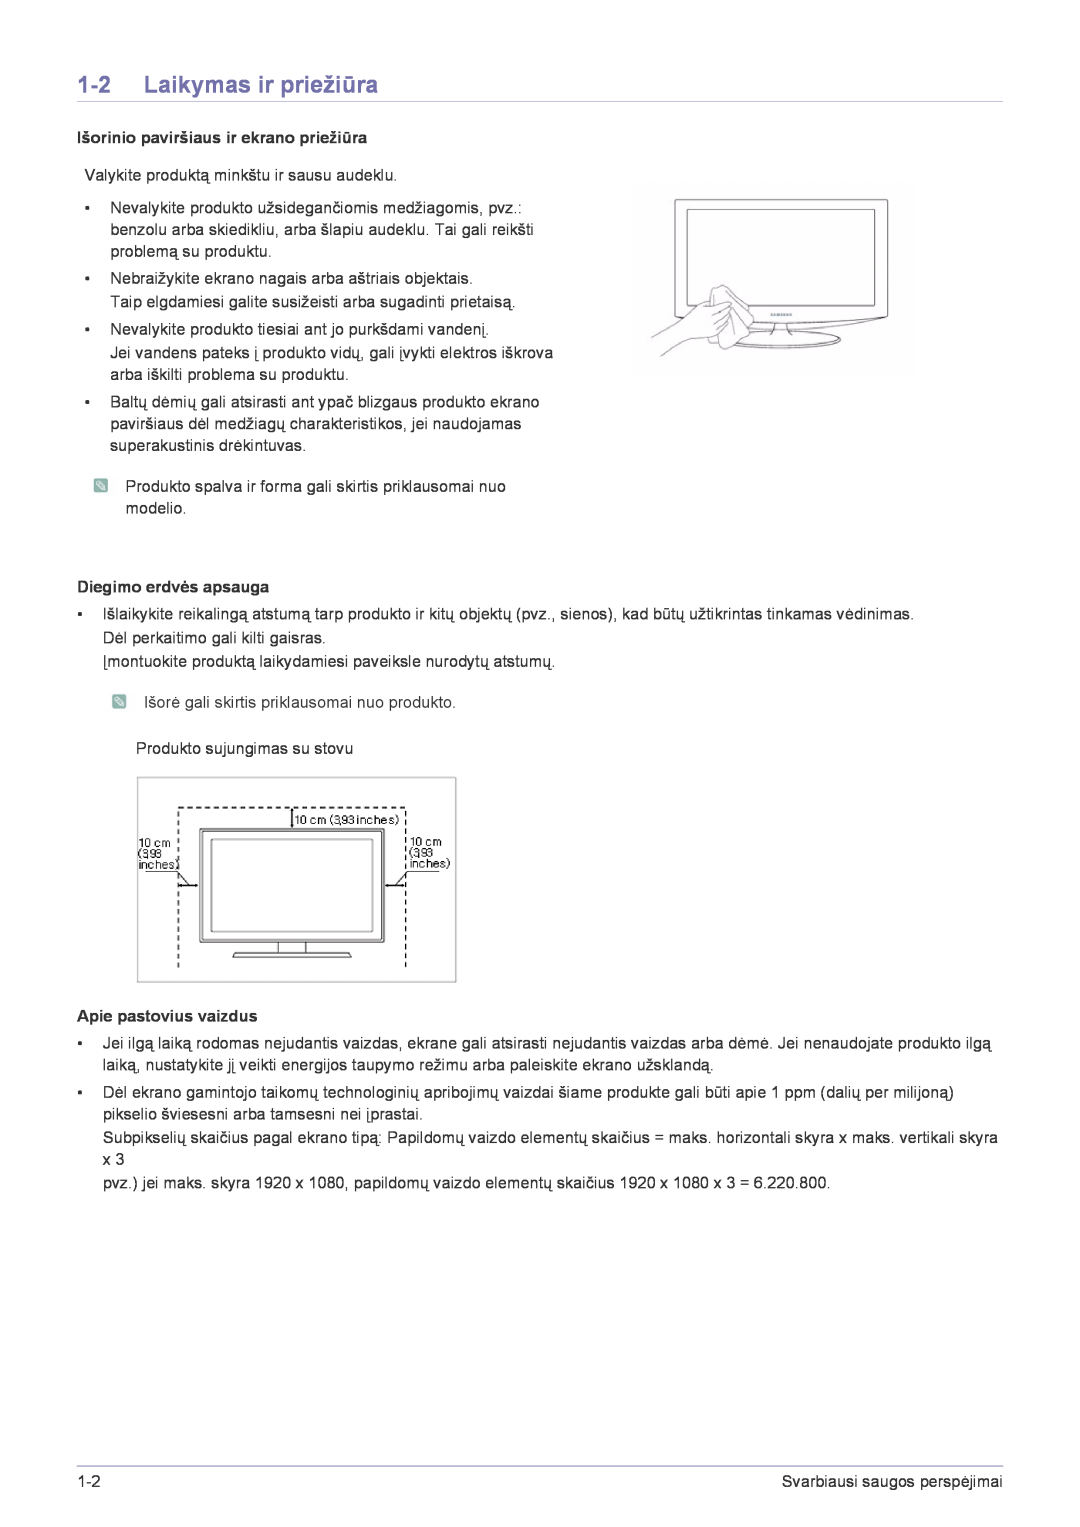 Samsung LS24X3HKFE/EN manual Laikymas ir priežiūra, Išorinio paviršiaus ir ekrano priežiūra, Diegimo erdvės apsauga 